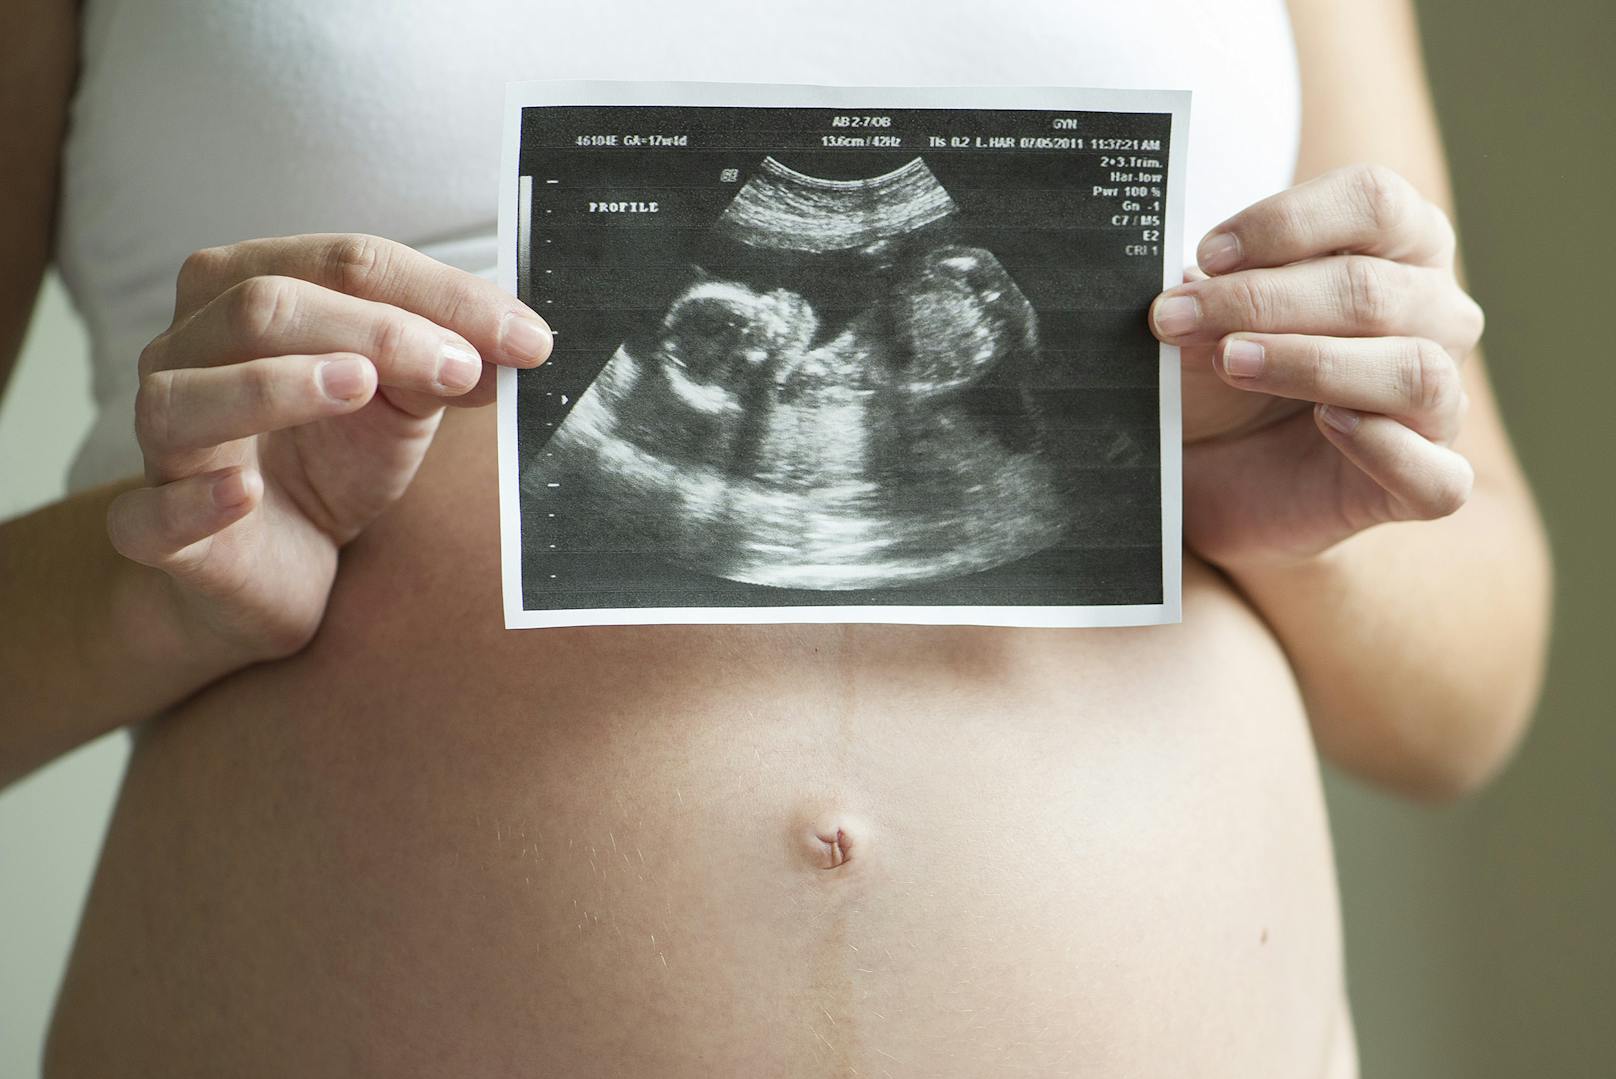 Das liegt an der vorgeburtlichen Entwicklung: Im frühen Stadium sind Embryonen Zwitter. Während sich Eierstöcke und Hoden erst später bilden, sind die Brustwarzen schon bei weiblichen wie männlichen Embryonen gleich.